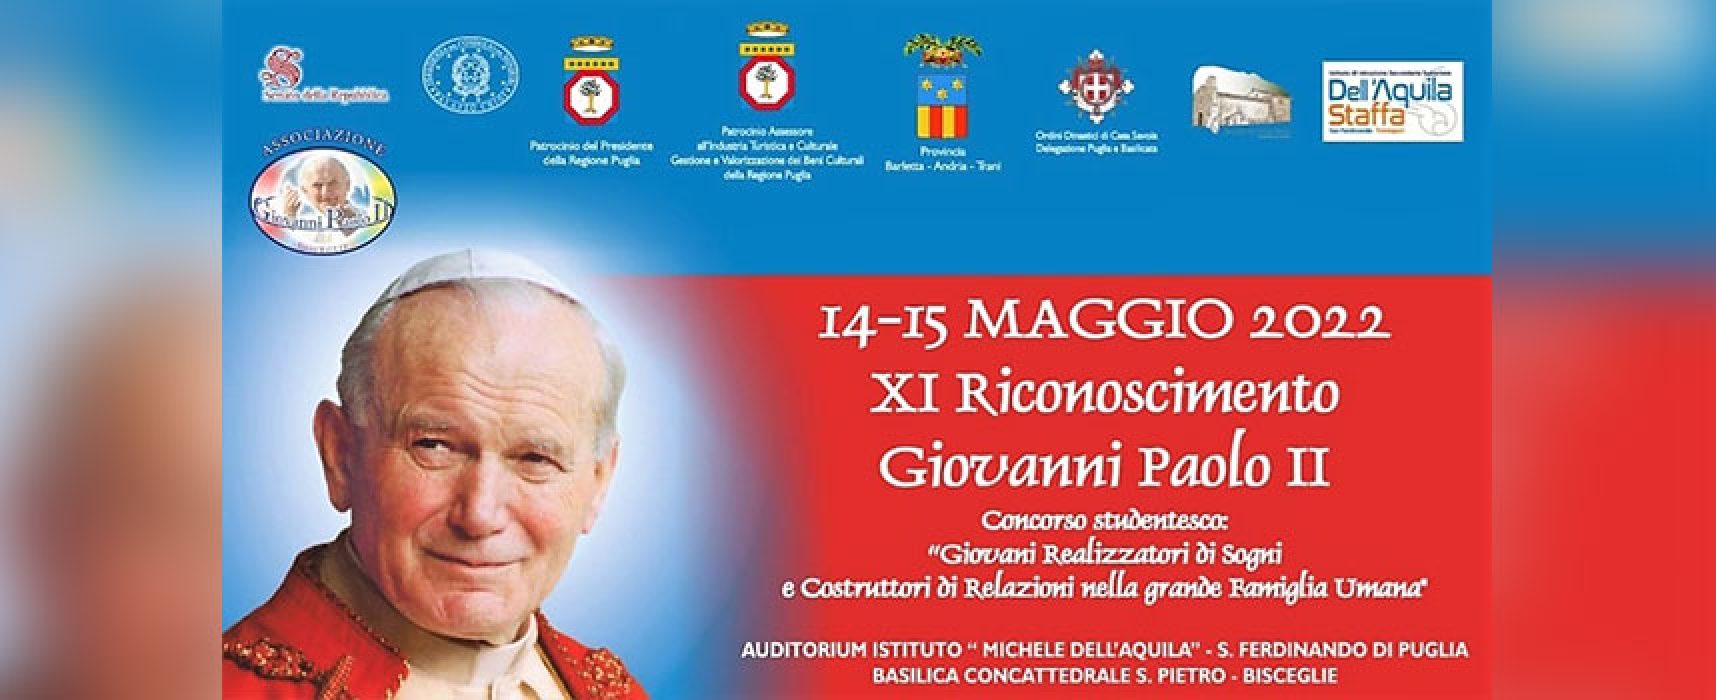 Premio Giovanni Paolo II, al via concorso studentesco: padrini Iacchetti e Sardella